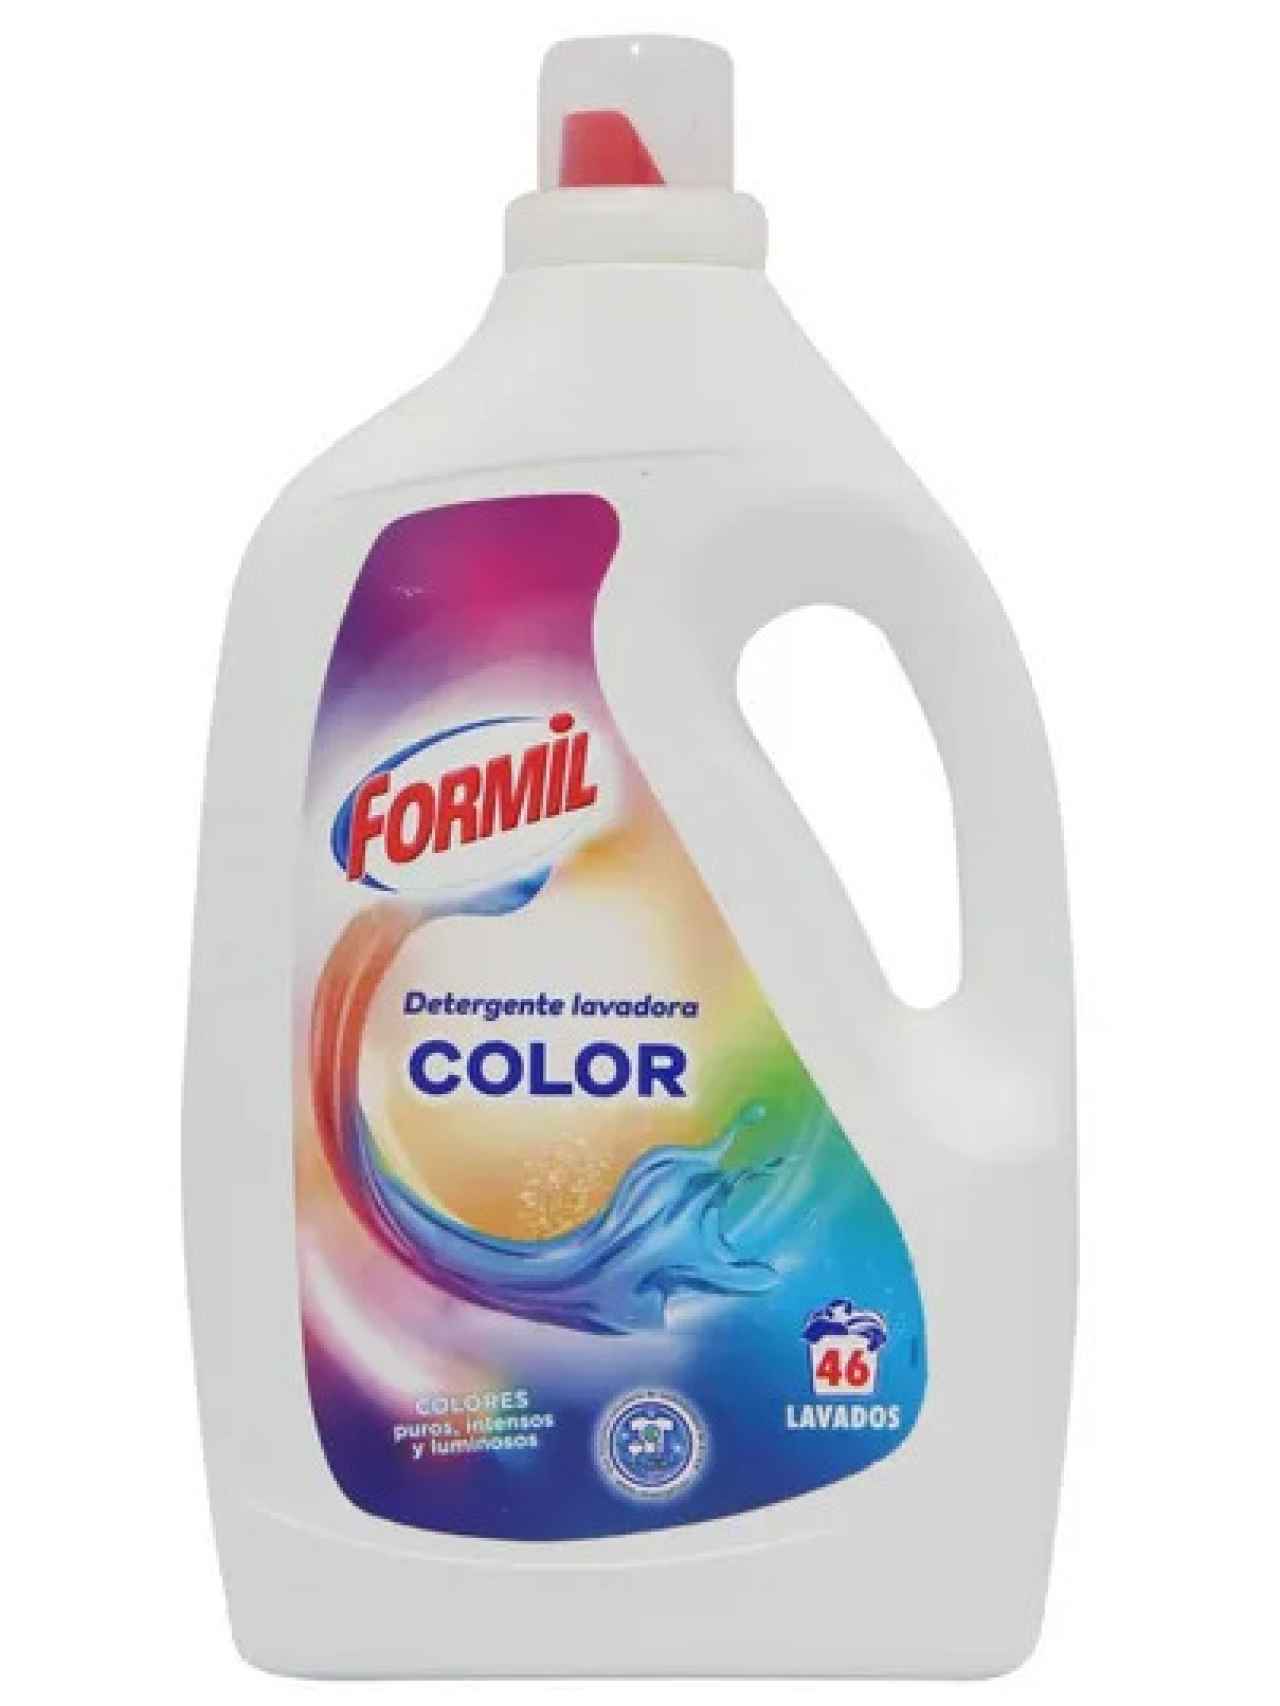 Detergente líquido color 46 lavados de Formil, la marca blanca de Lidl.